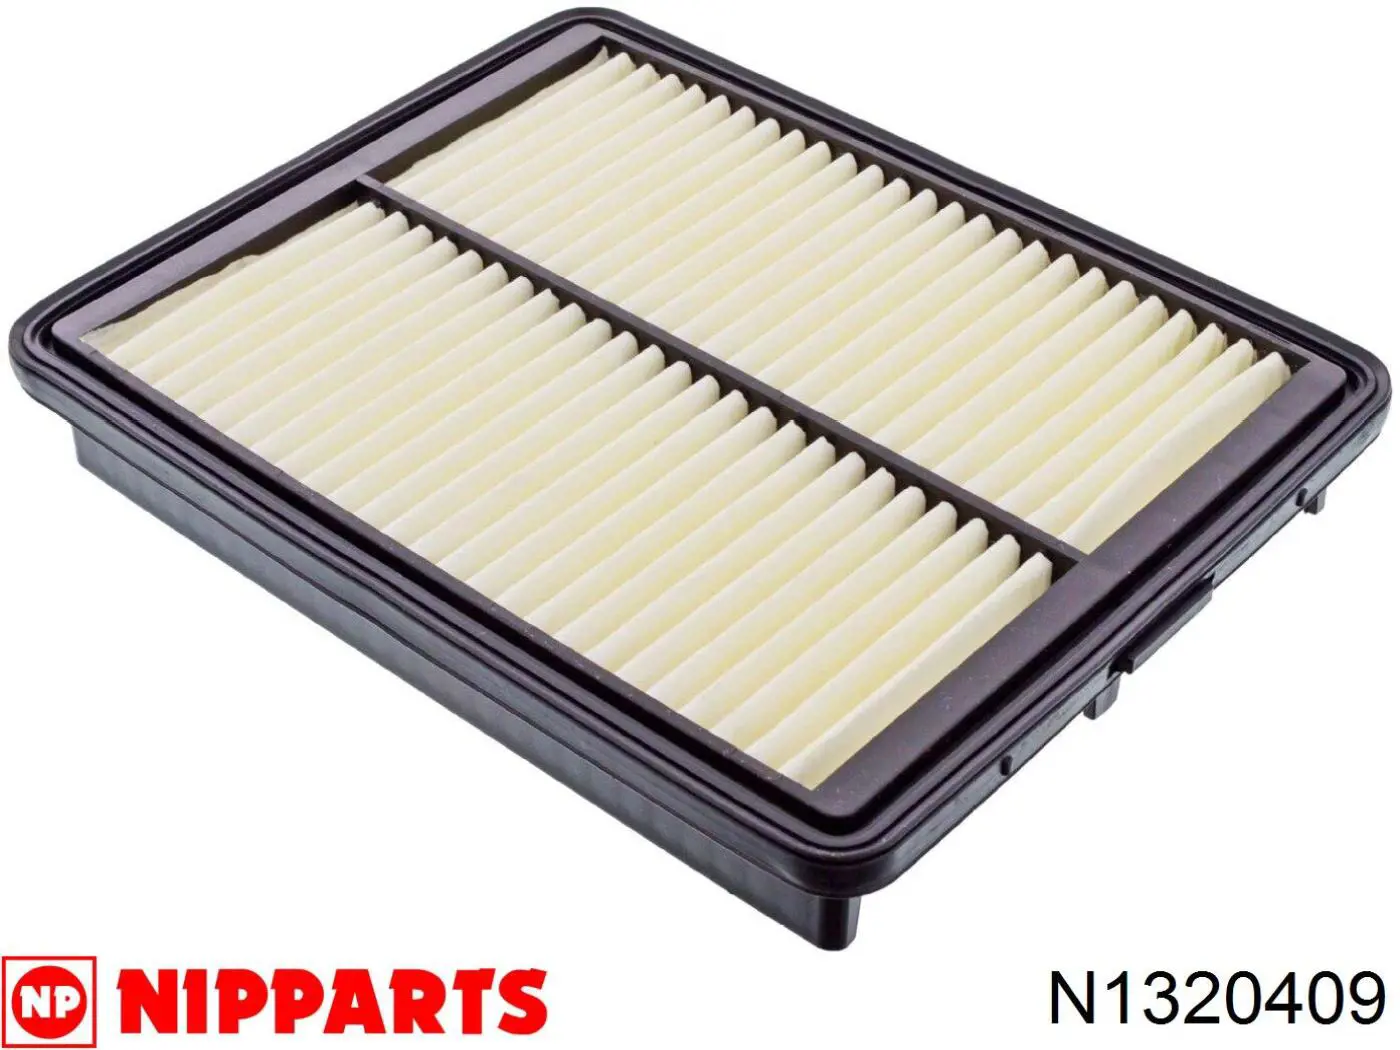 N1320409 Nipparts filtro de aire